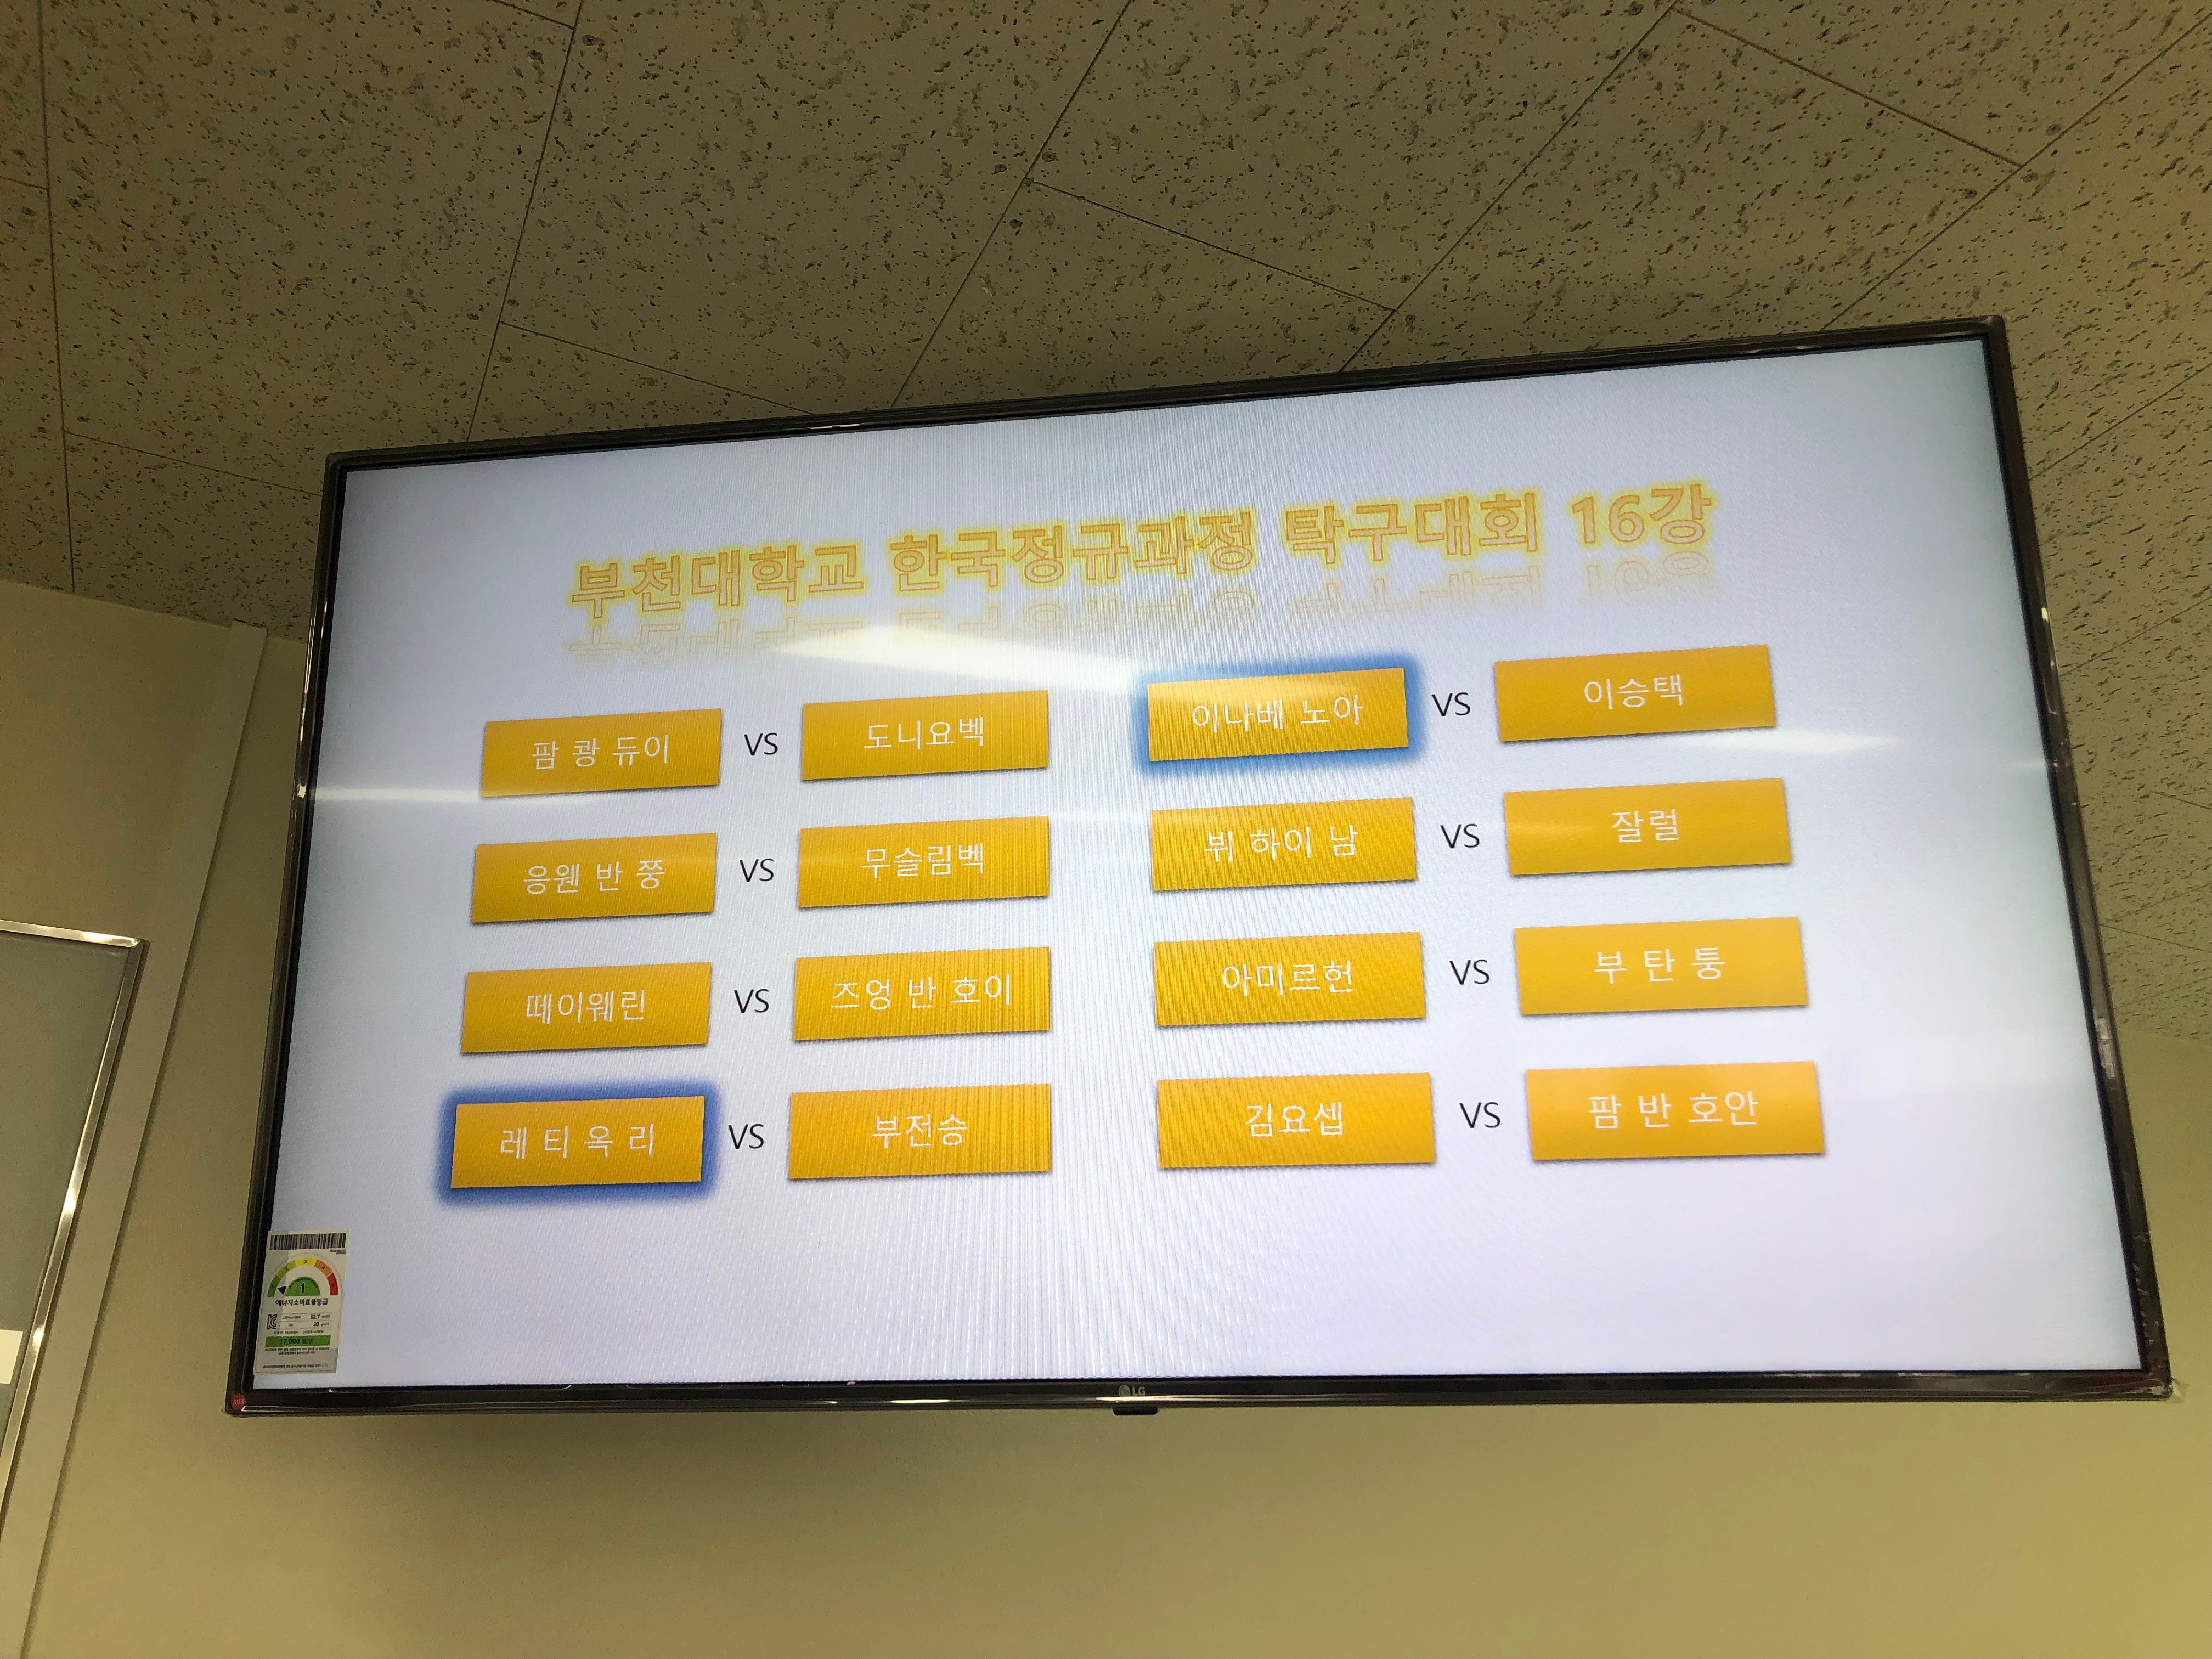 2019.08.01 2019-한국어정규과정 탁구대회